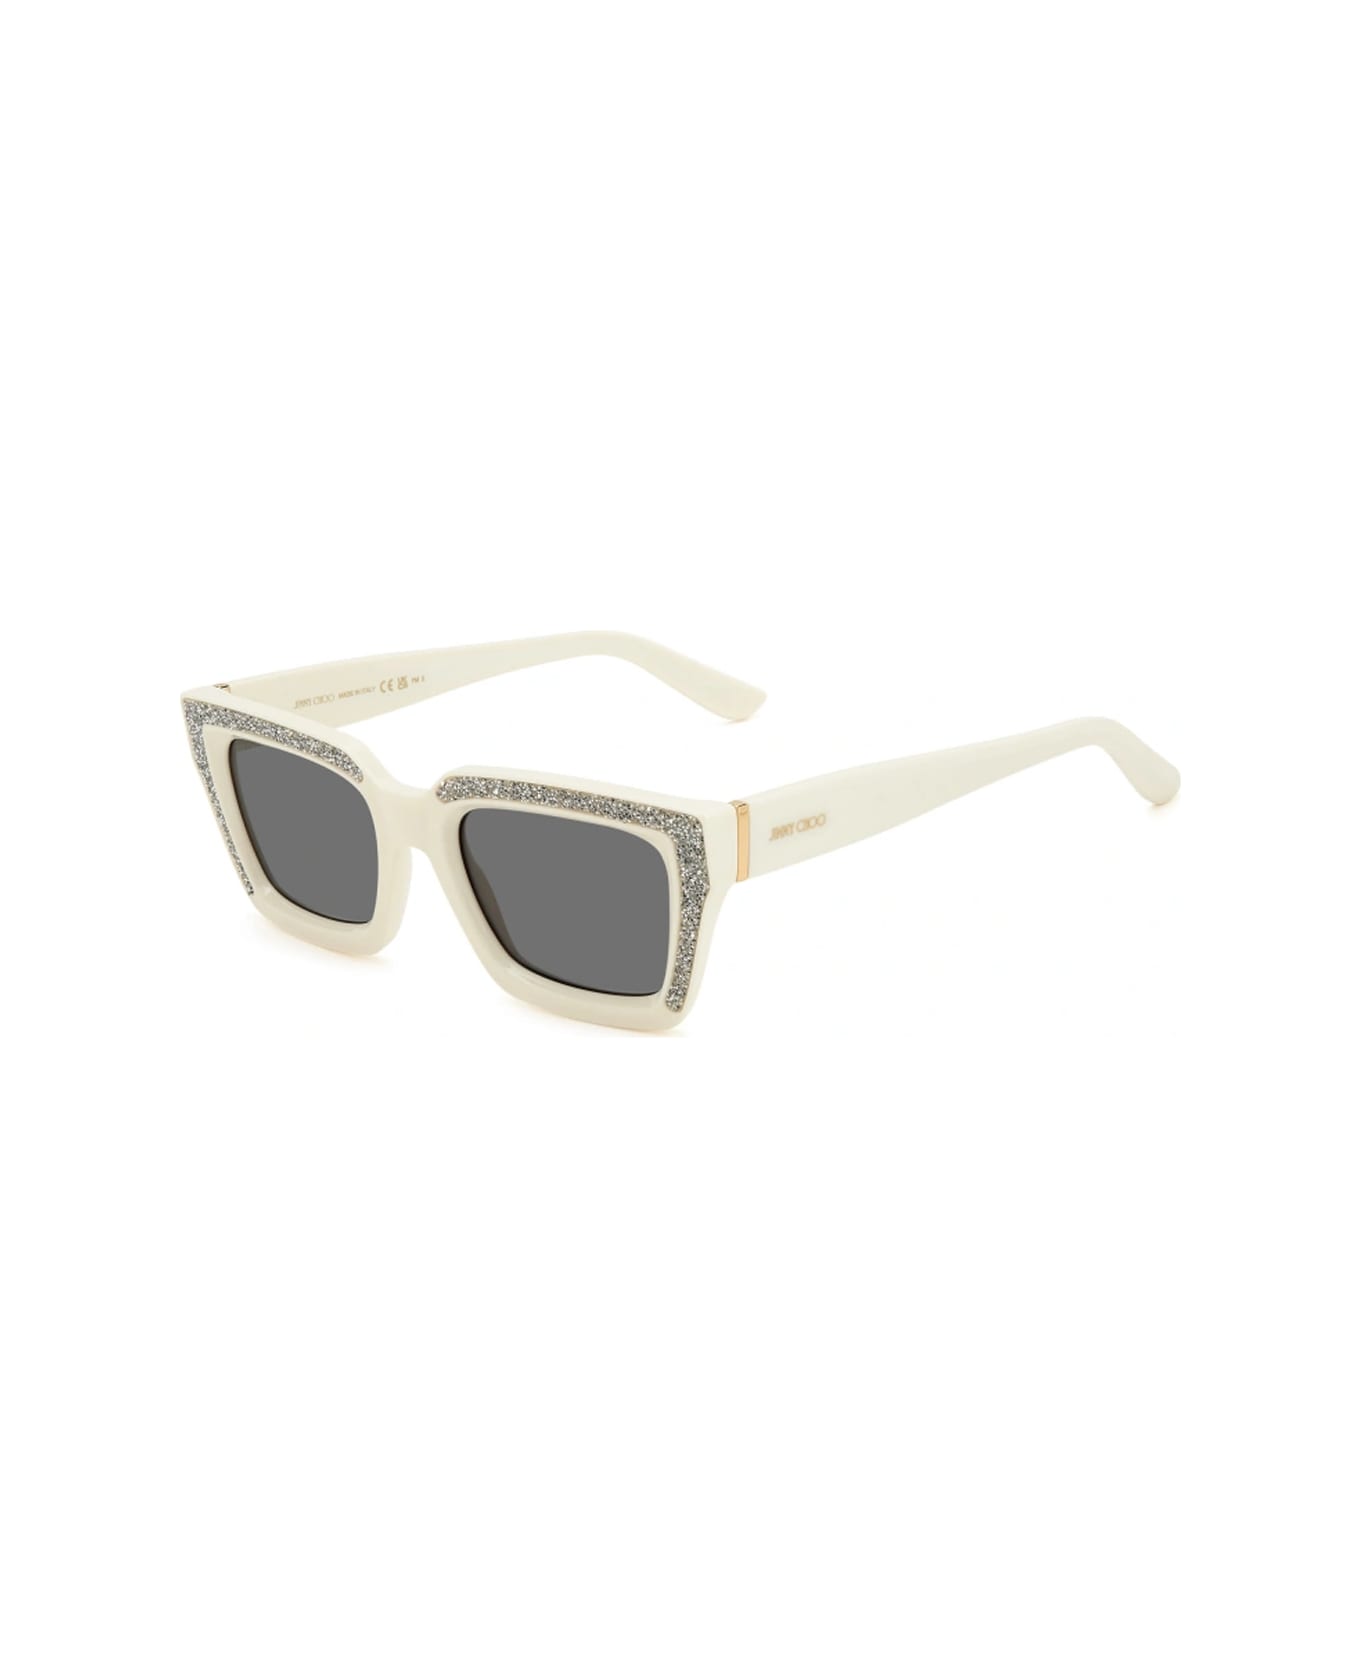 Jimmy Choo Eyewear Megs/s Szj/2k Sunglasses - Avorio